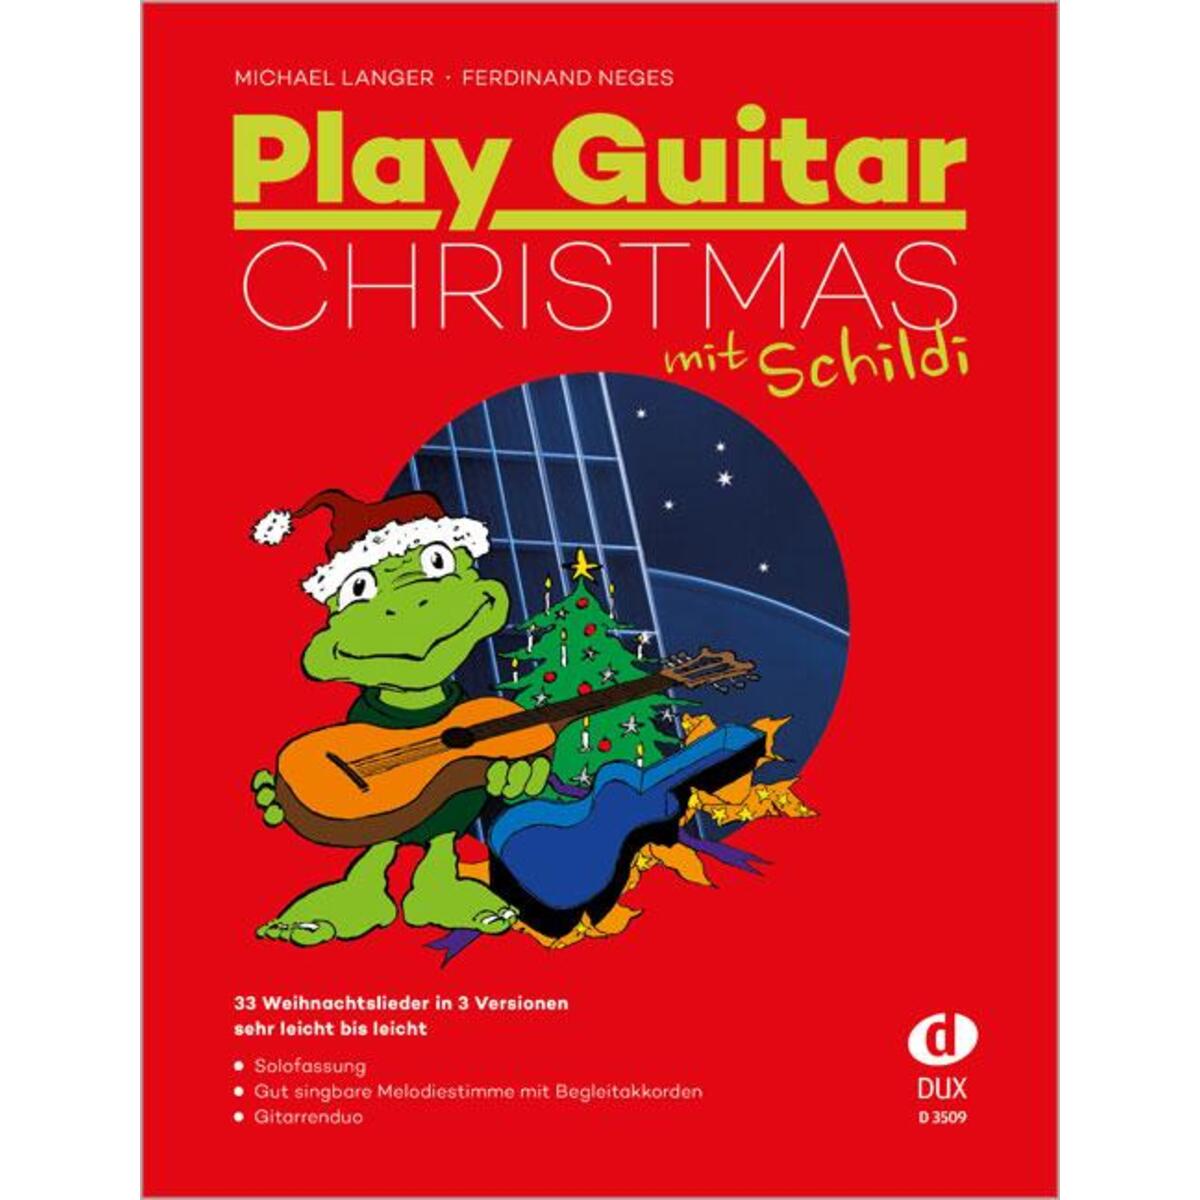 Play Guitar Christmas mit Schildi von Edition DUX